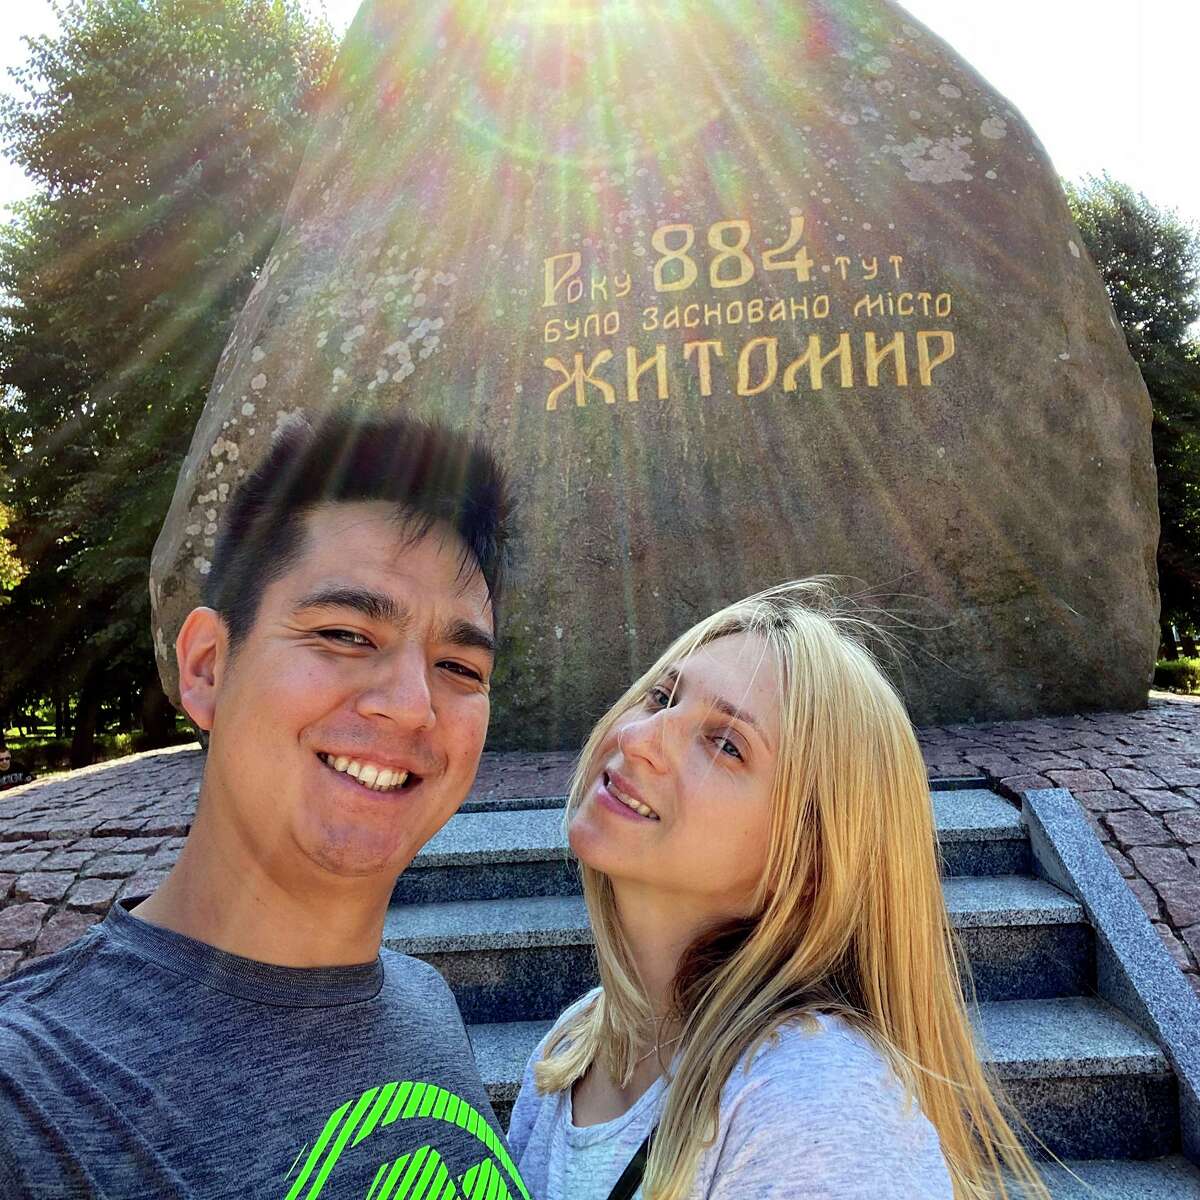 Happier times: David and Sasha in Ukraine last summer